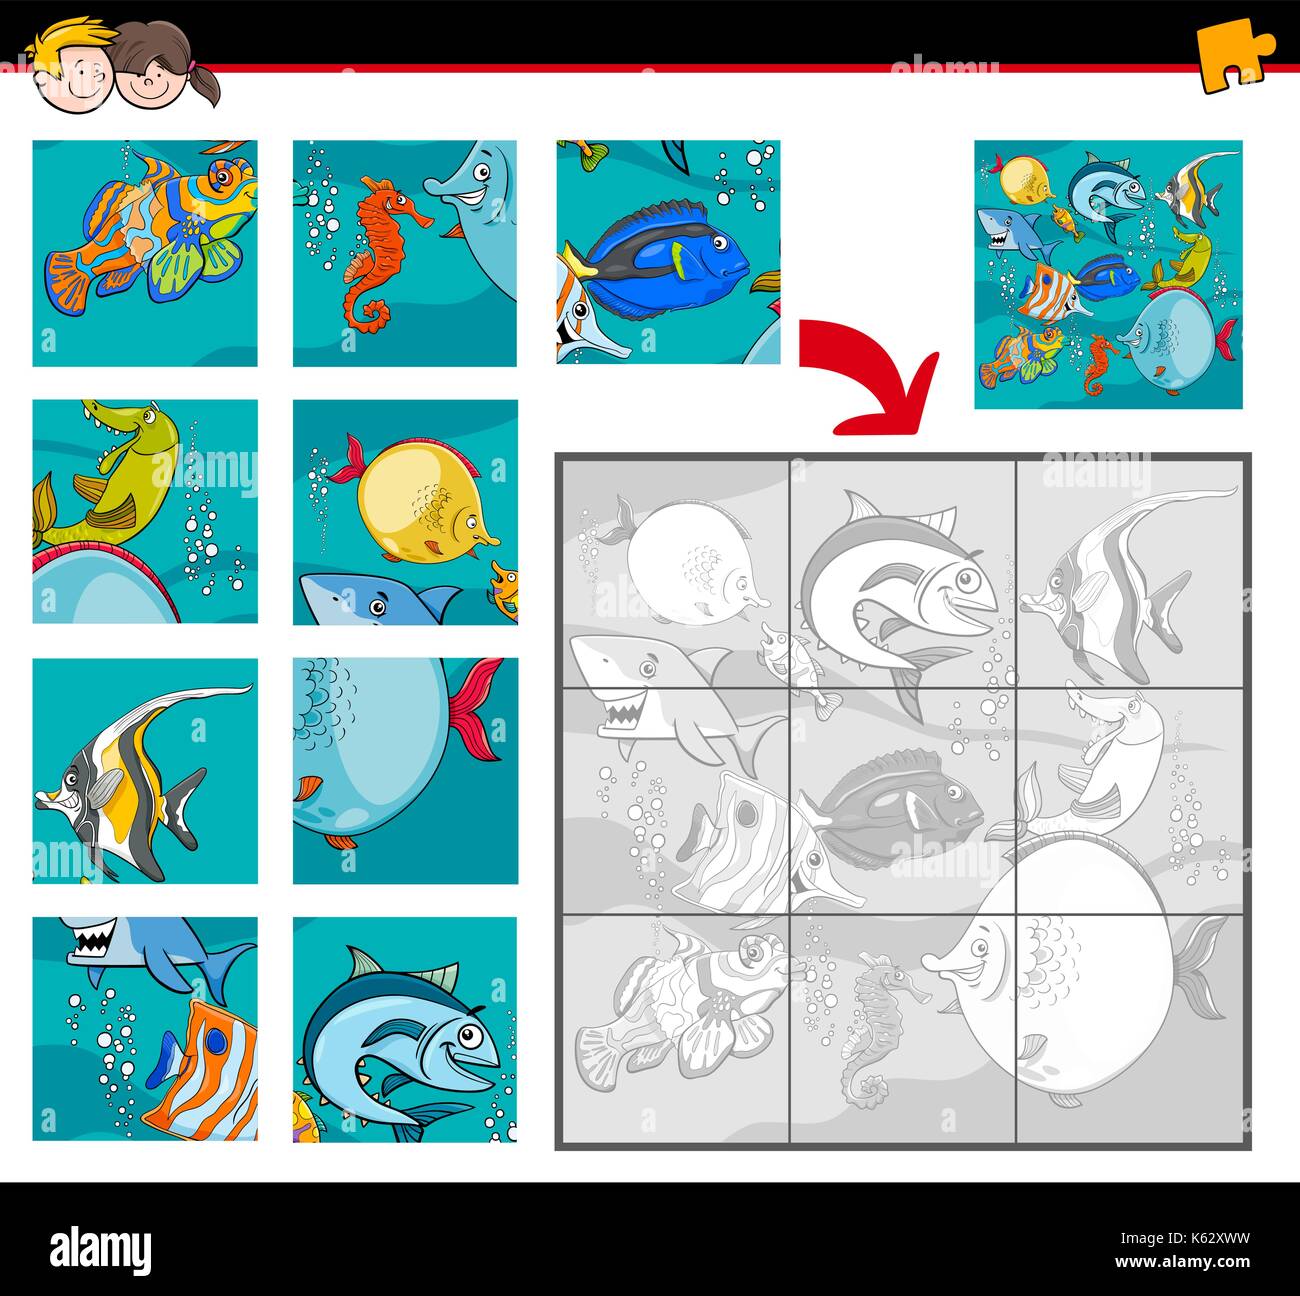 Cartoon illustration de l'activité pédagogique puzzle jeu pour les enfants avec des poissons et cétacés caractères animaux Illustration de Vecteur